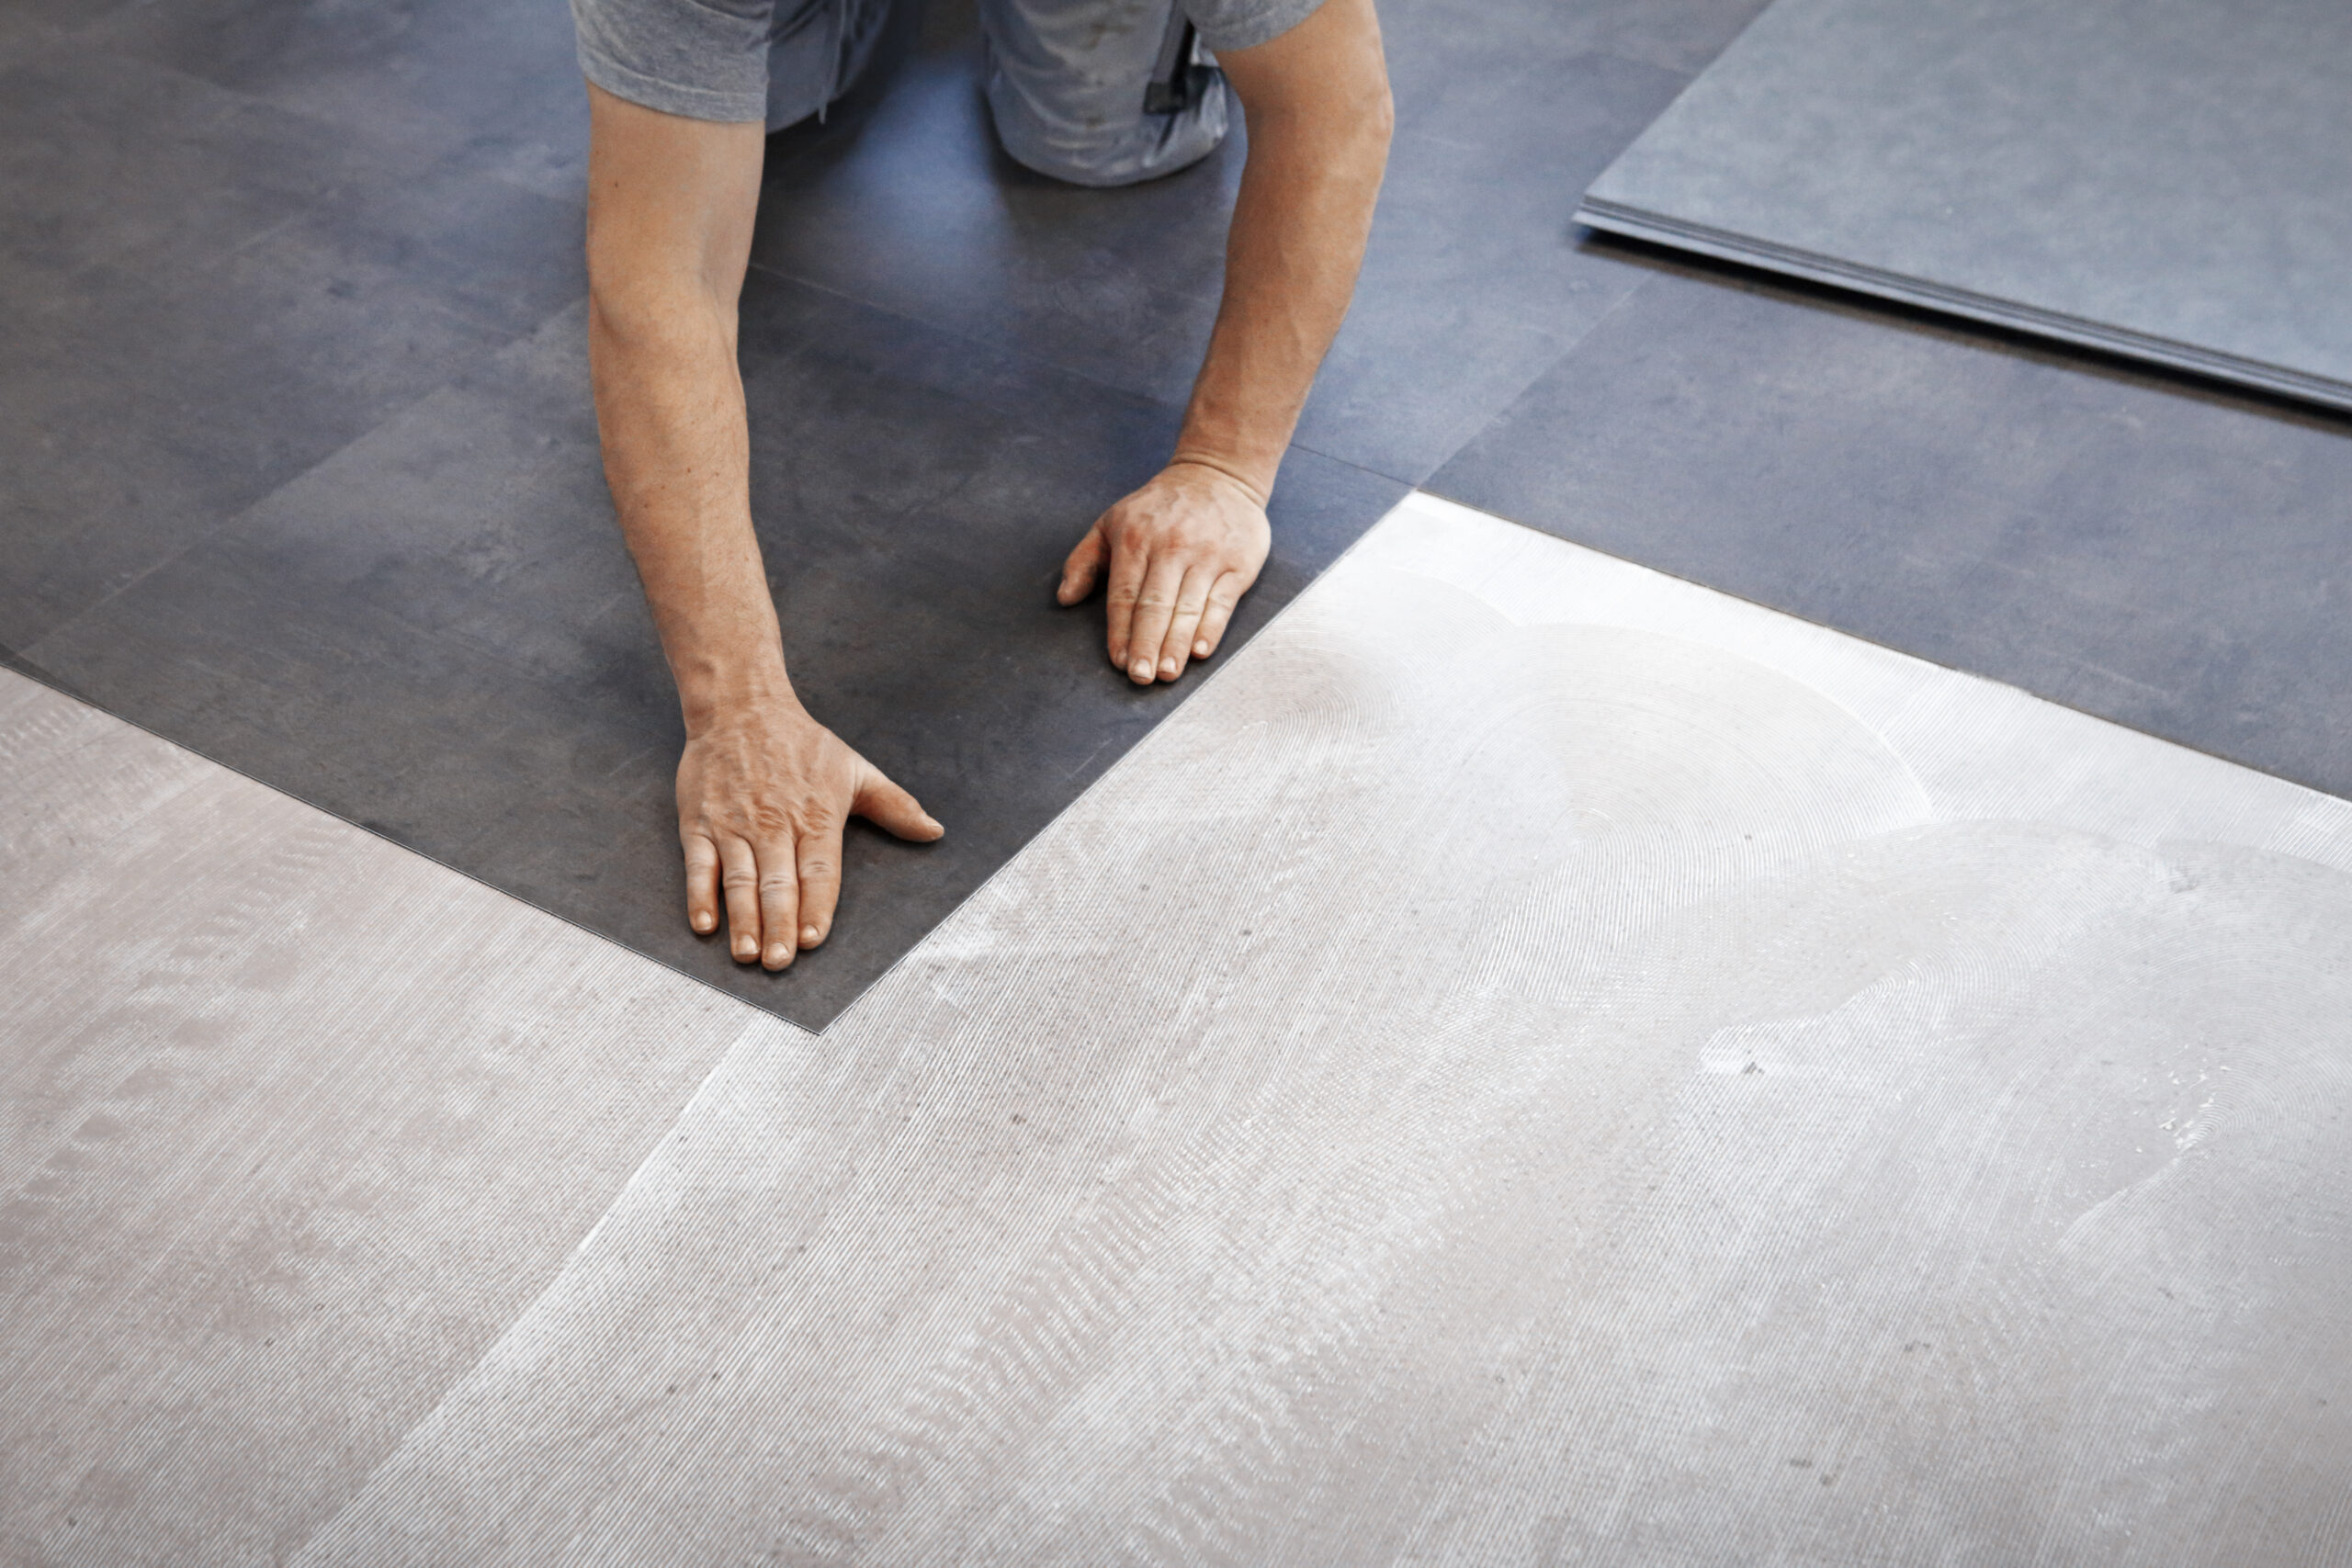 Linoleum flooring